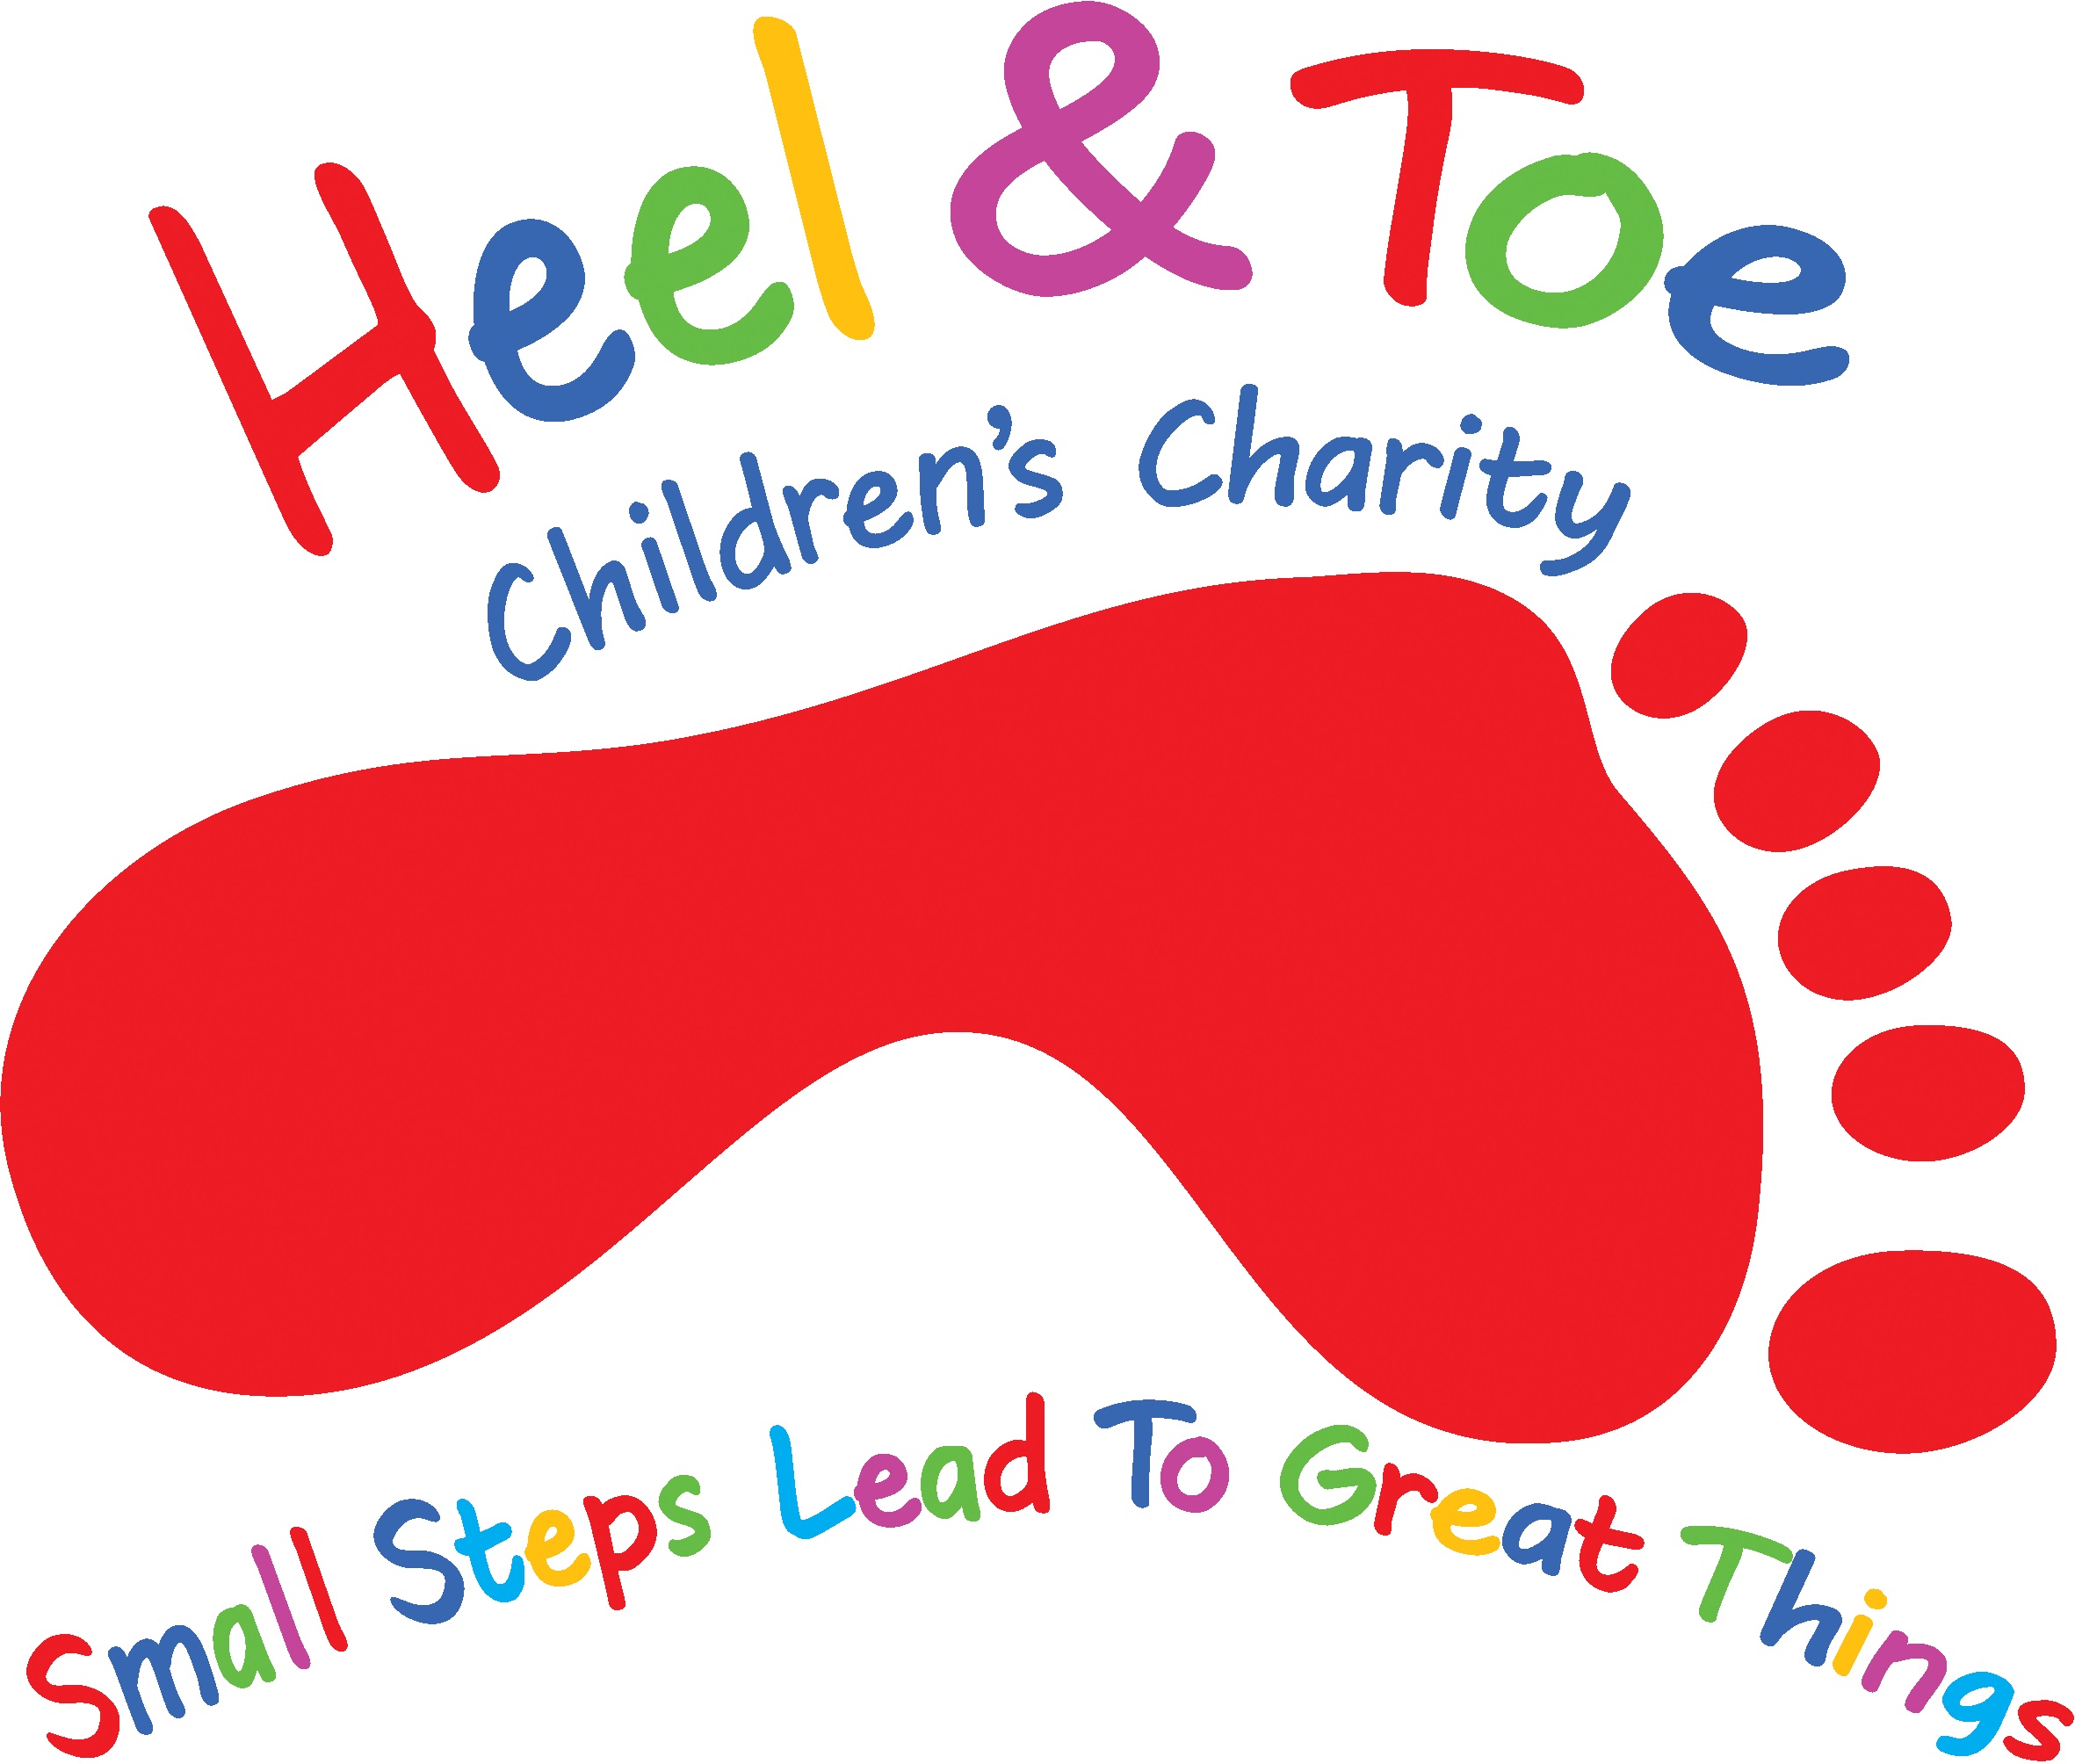 Heel & Toe Children’s Charity